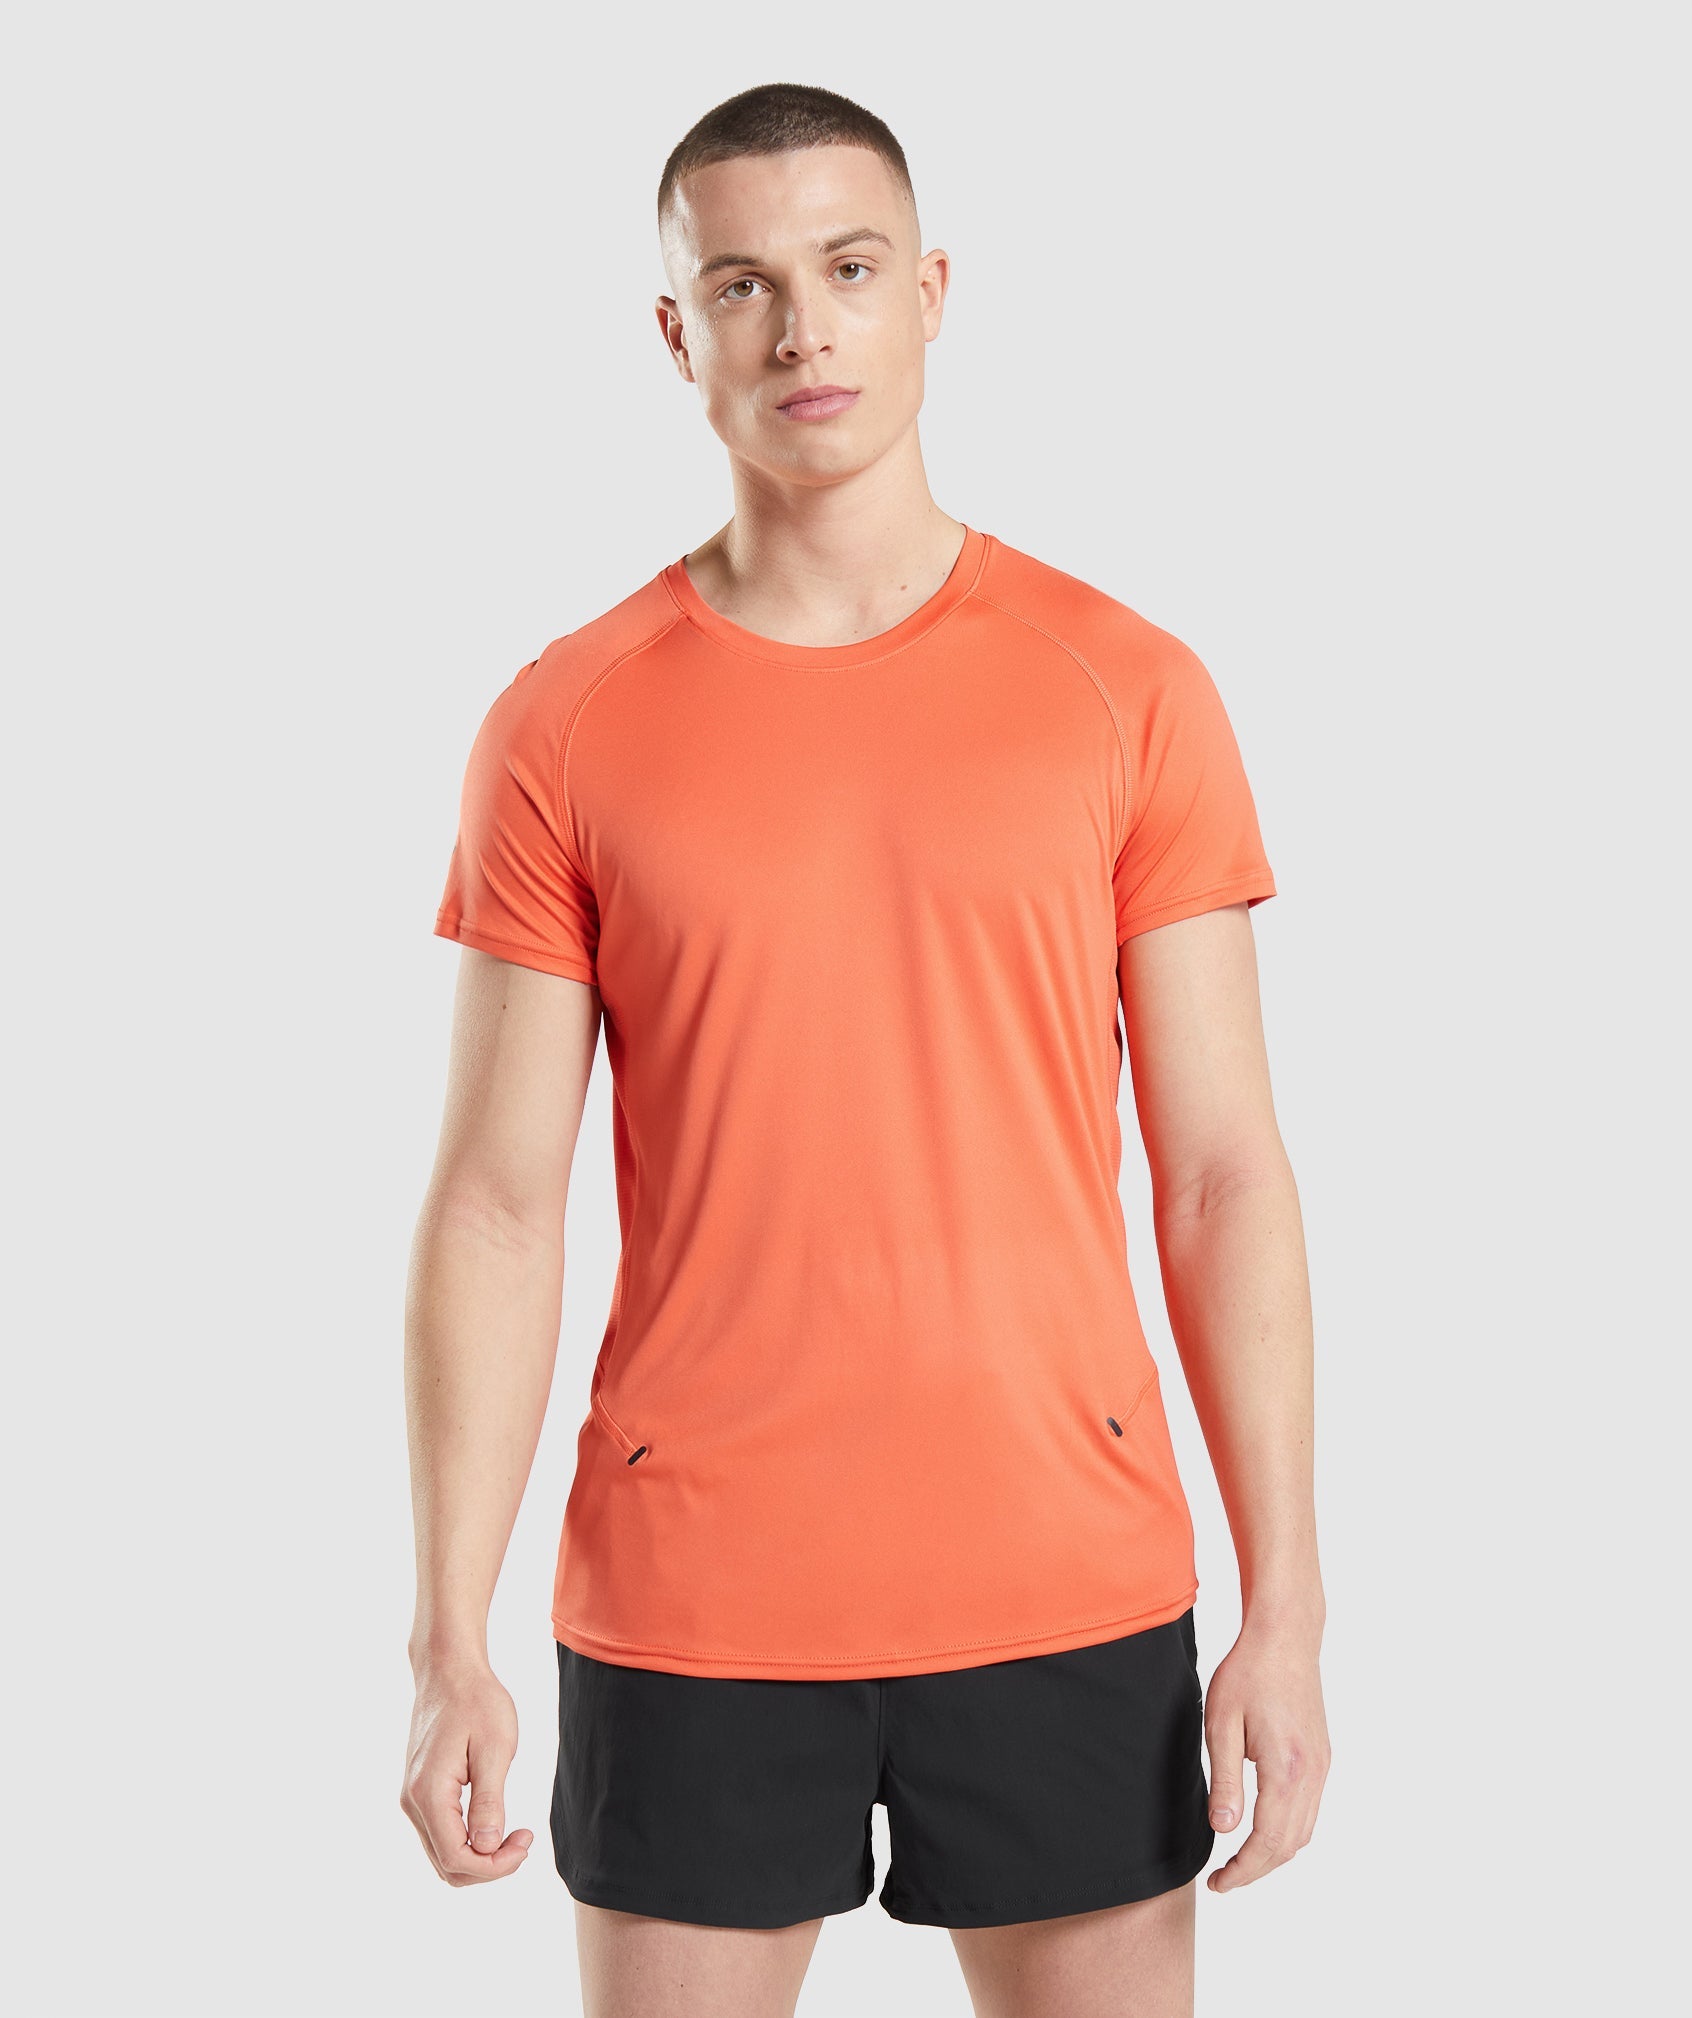 Speed Evolve T-Shirt in Papaya Orange - view 1